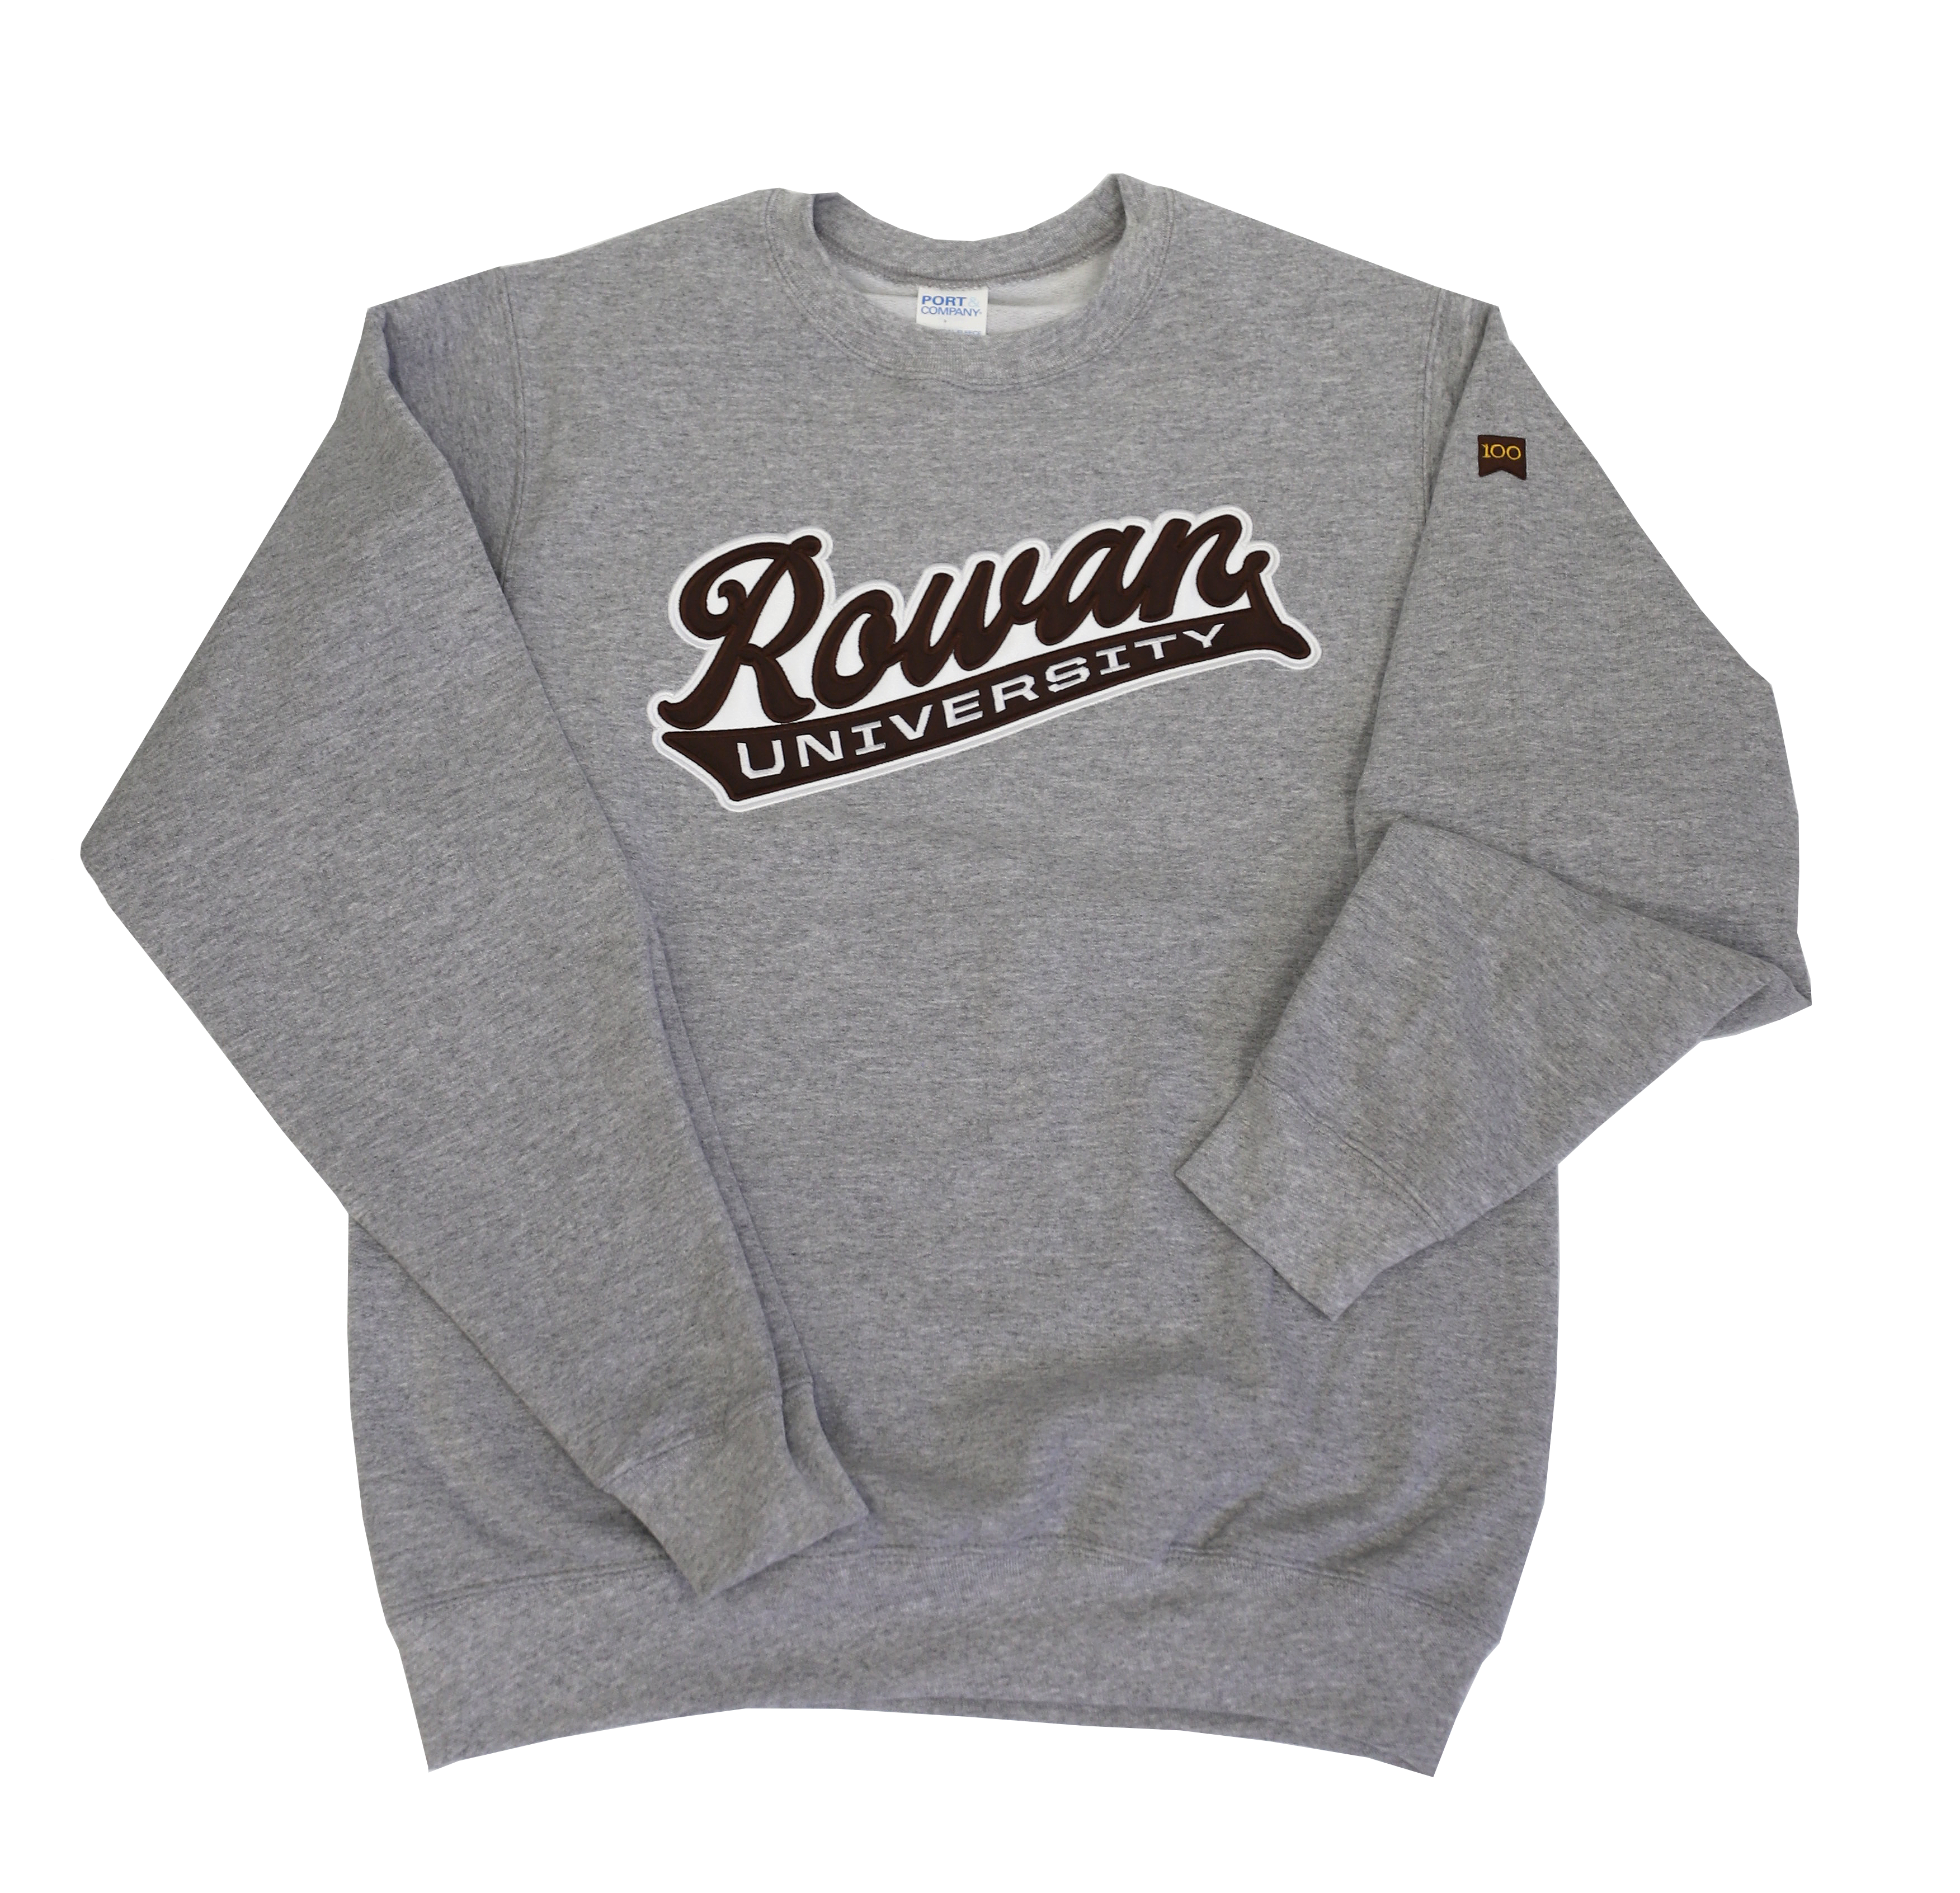 Rowan University gray crew sweatshirt